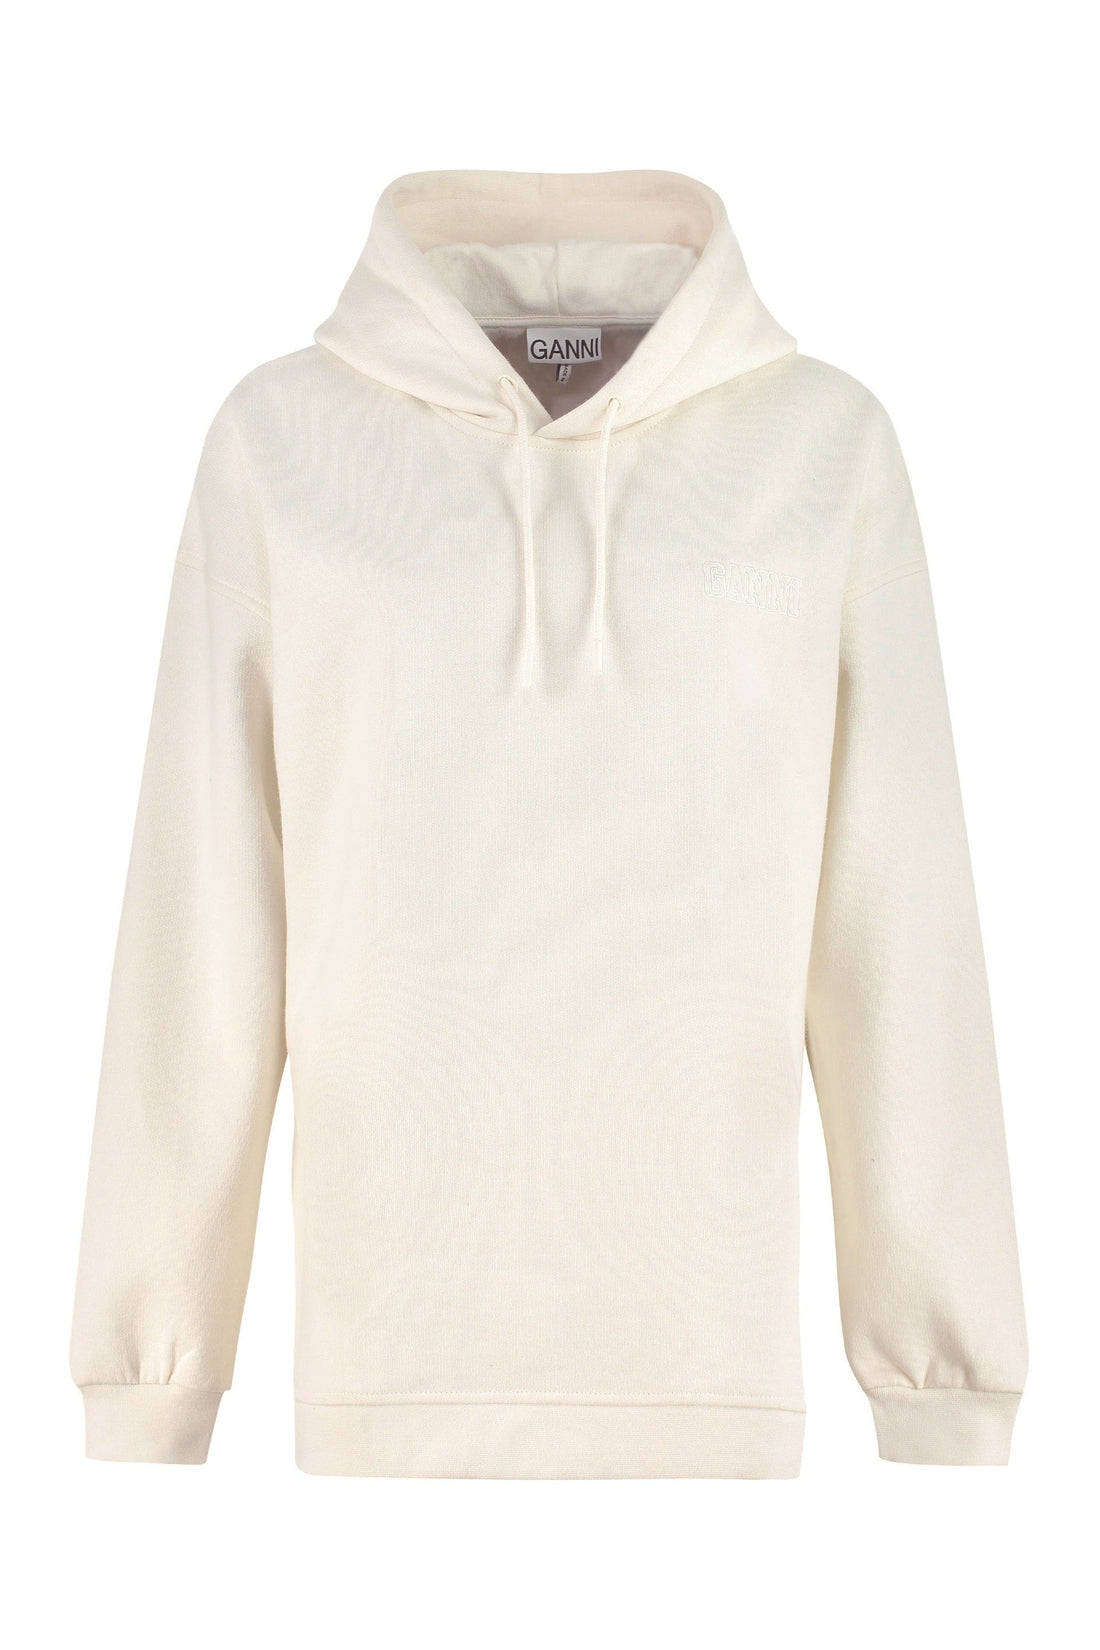 GANNI-OUTLET-SALE-Software cotton hoodie-ARCHIVIST